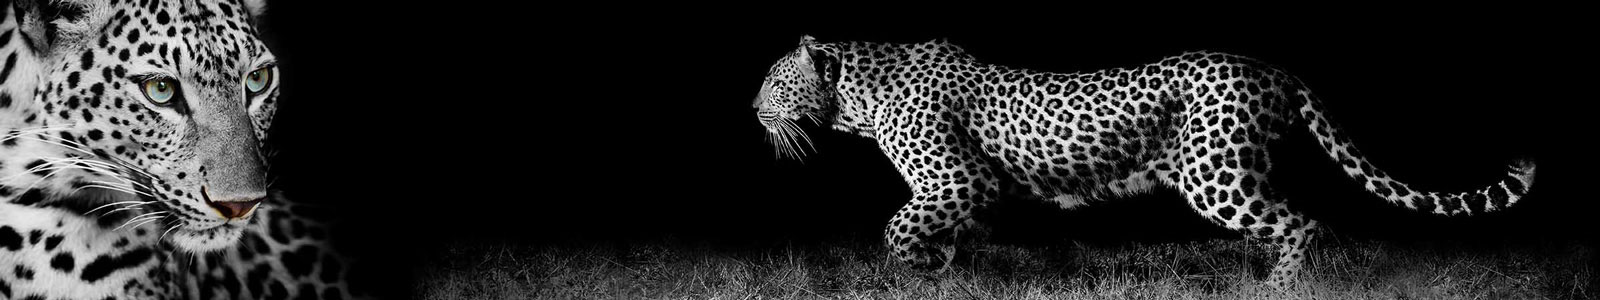 №3207 - Прекрасный леопард на черном